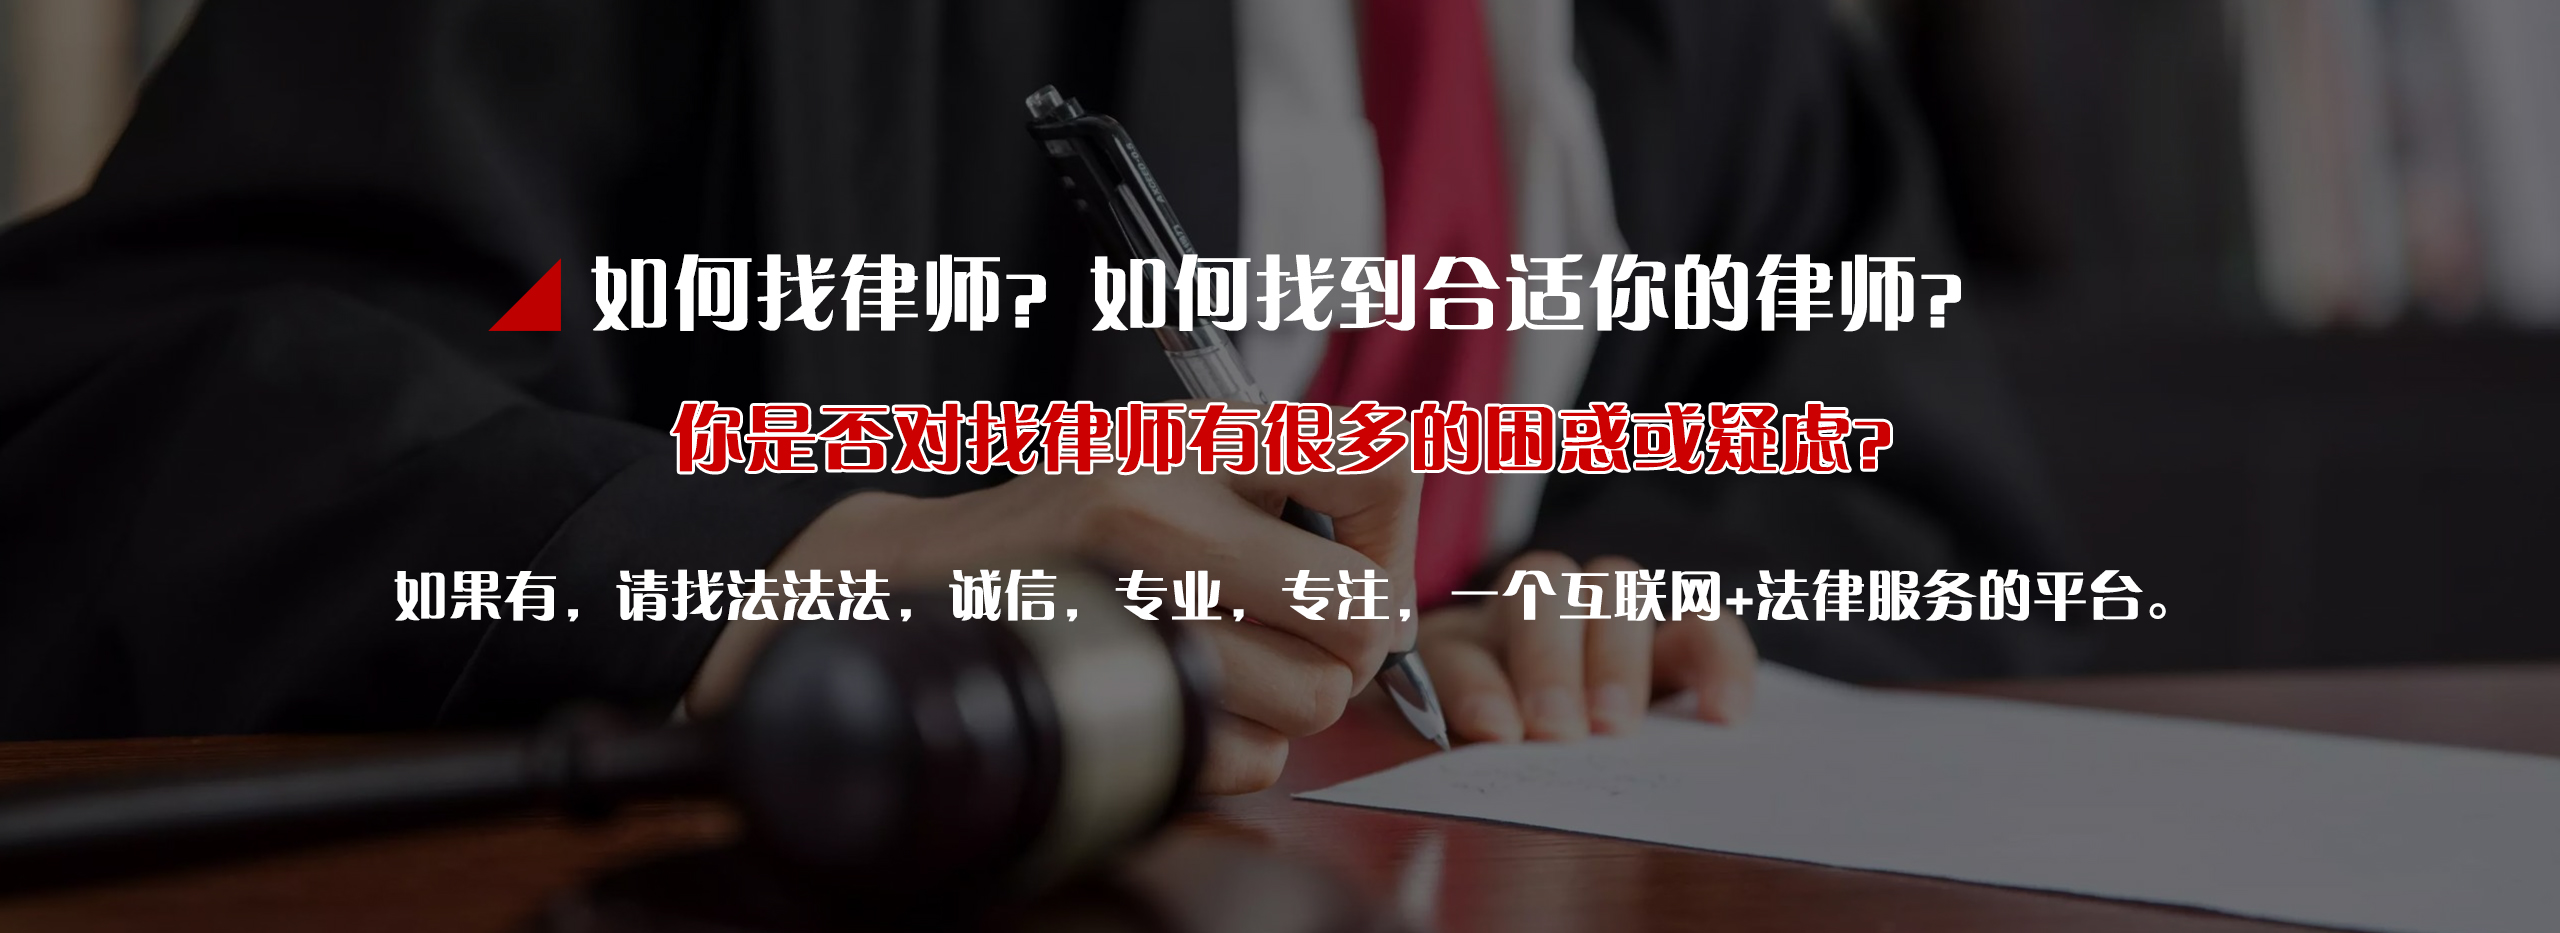 专业投资管理公司_物流公司相关-四川法法法信息科技有限公司